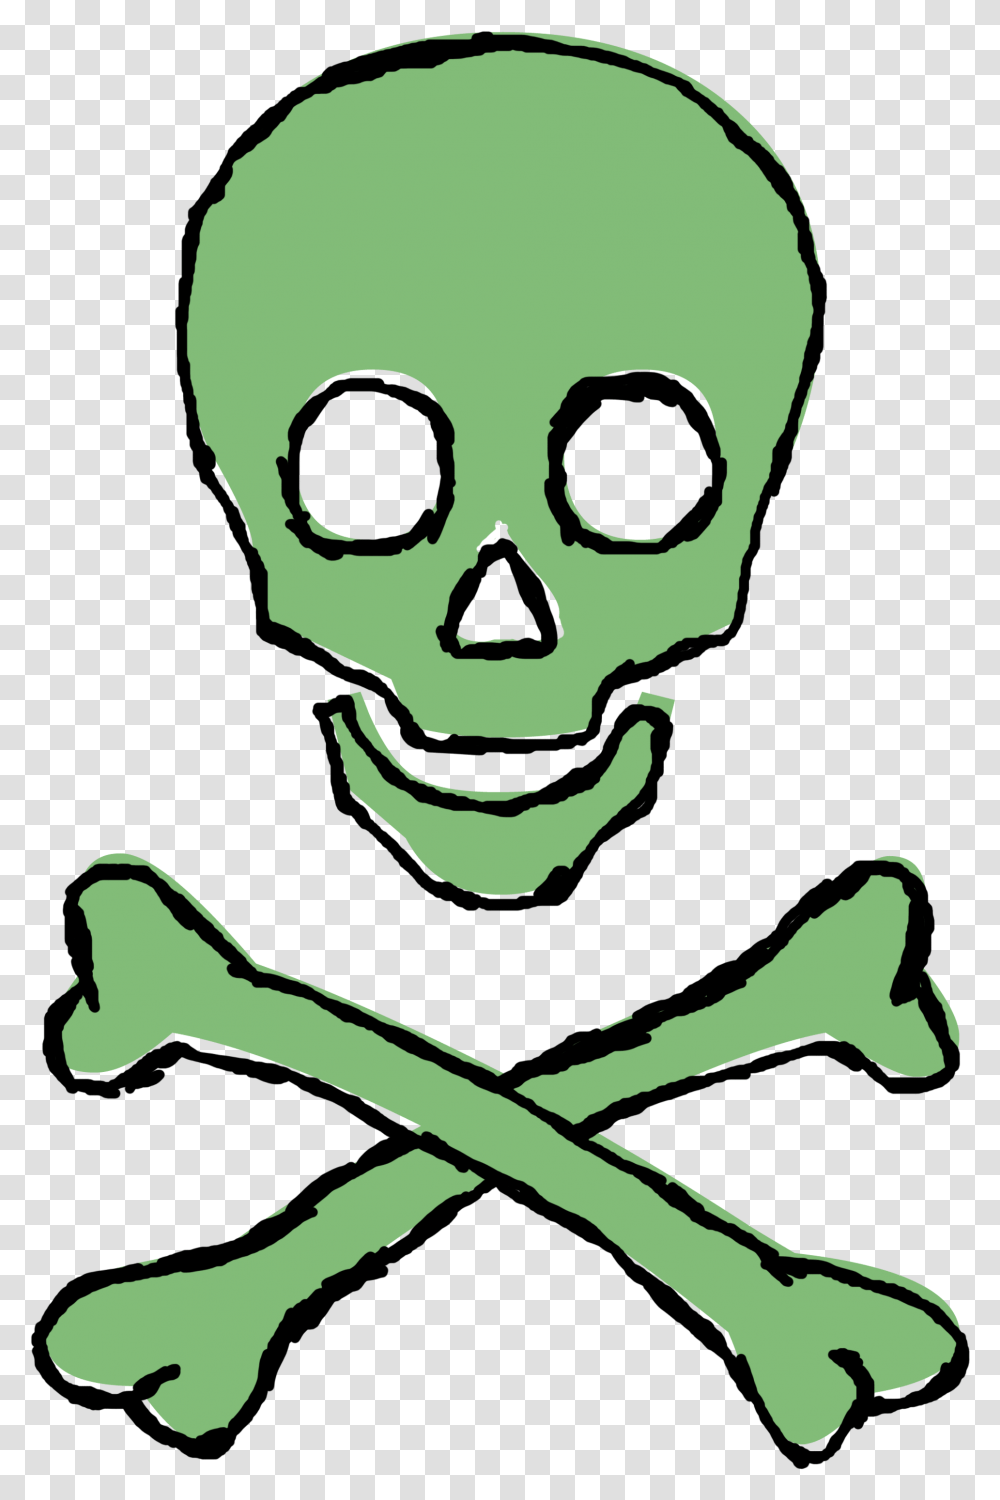 Green Skull Tokidoki X Lovehoney Logo Clipart Full Groundnut Oil Vs Sunflower Oil, Alien, Person, Human, Drawing Transparent Png